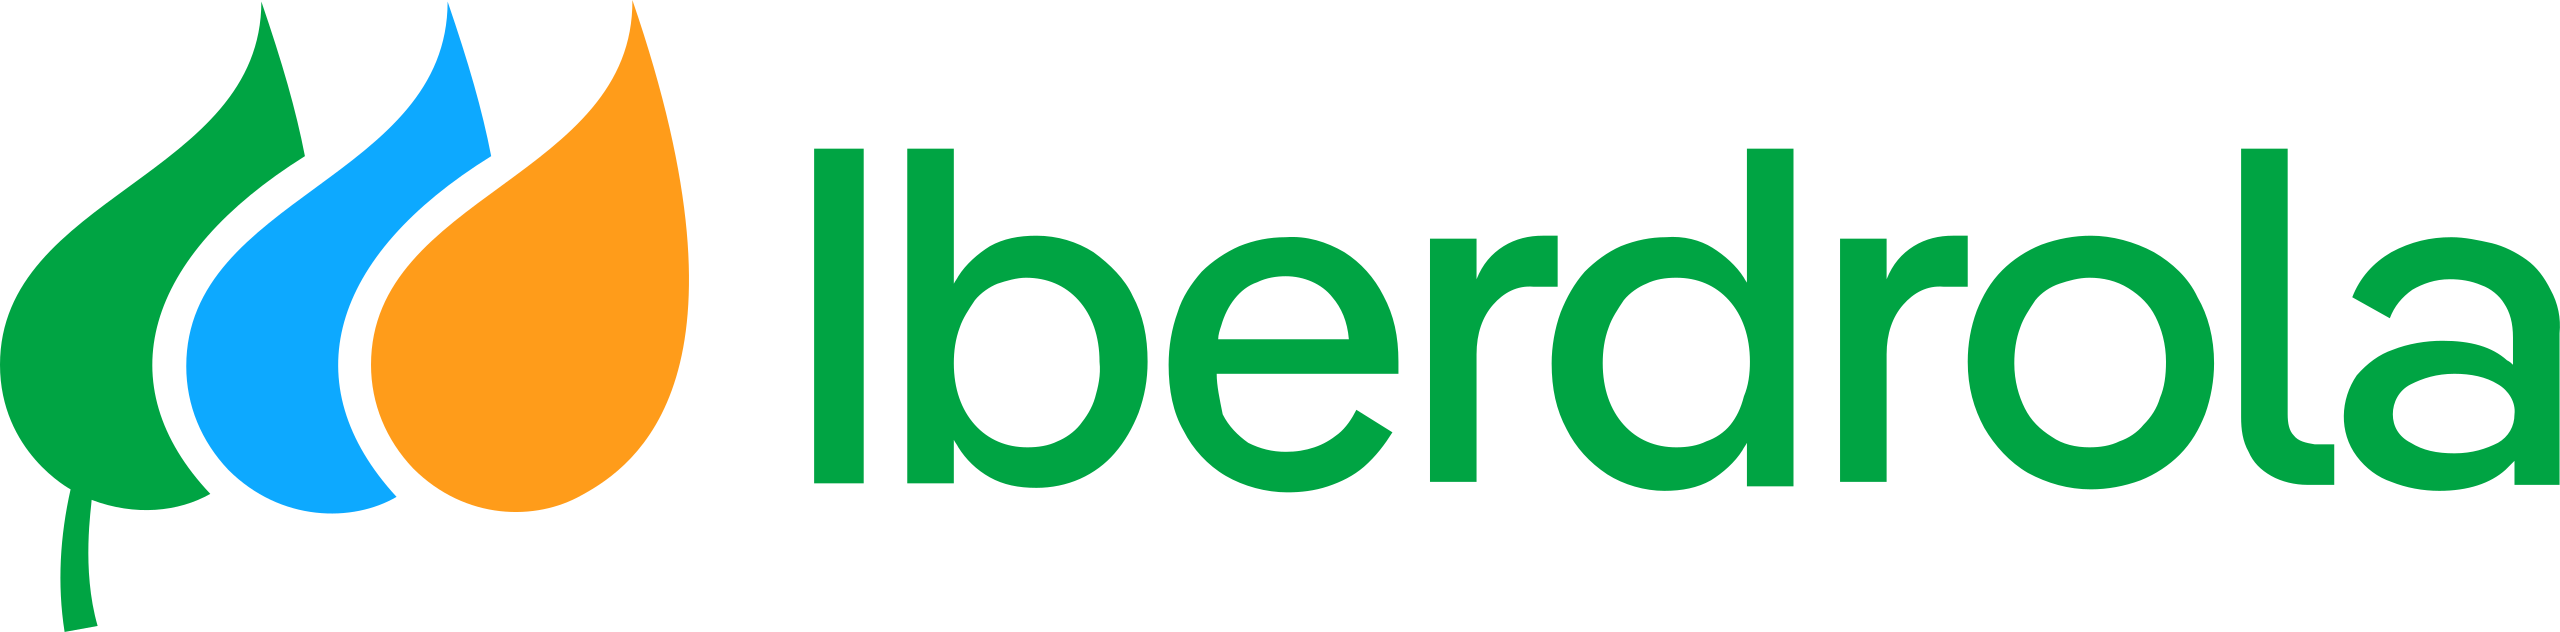 Programa de Start-ups PERSEO de Iberdrola